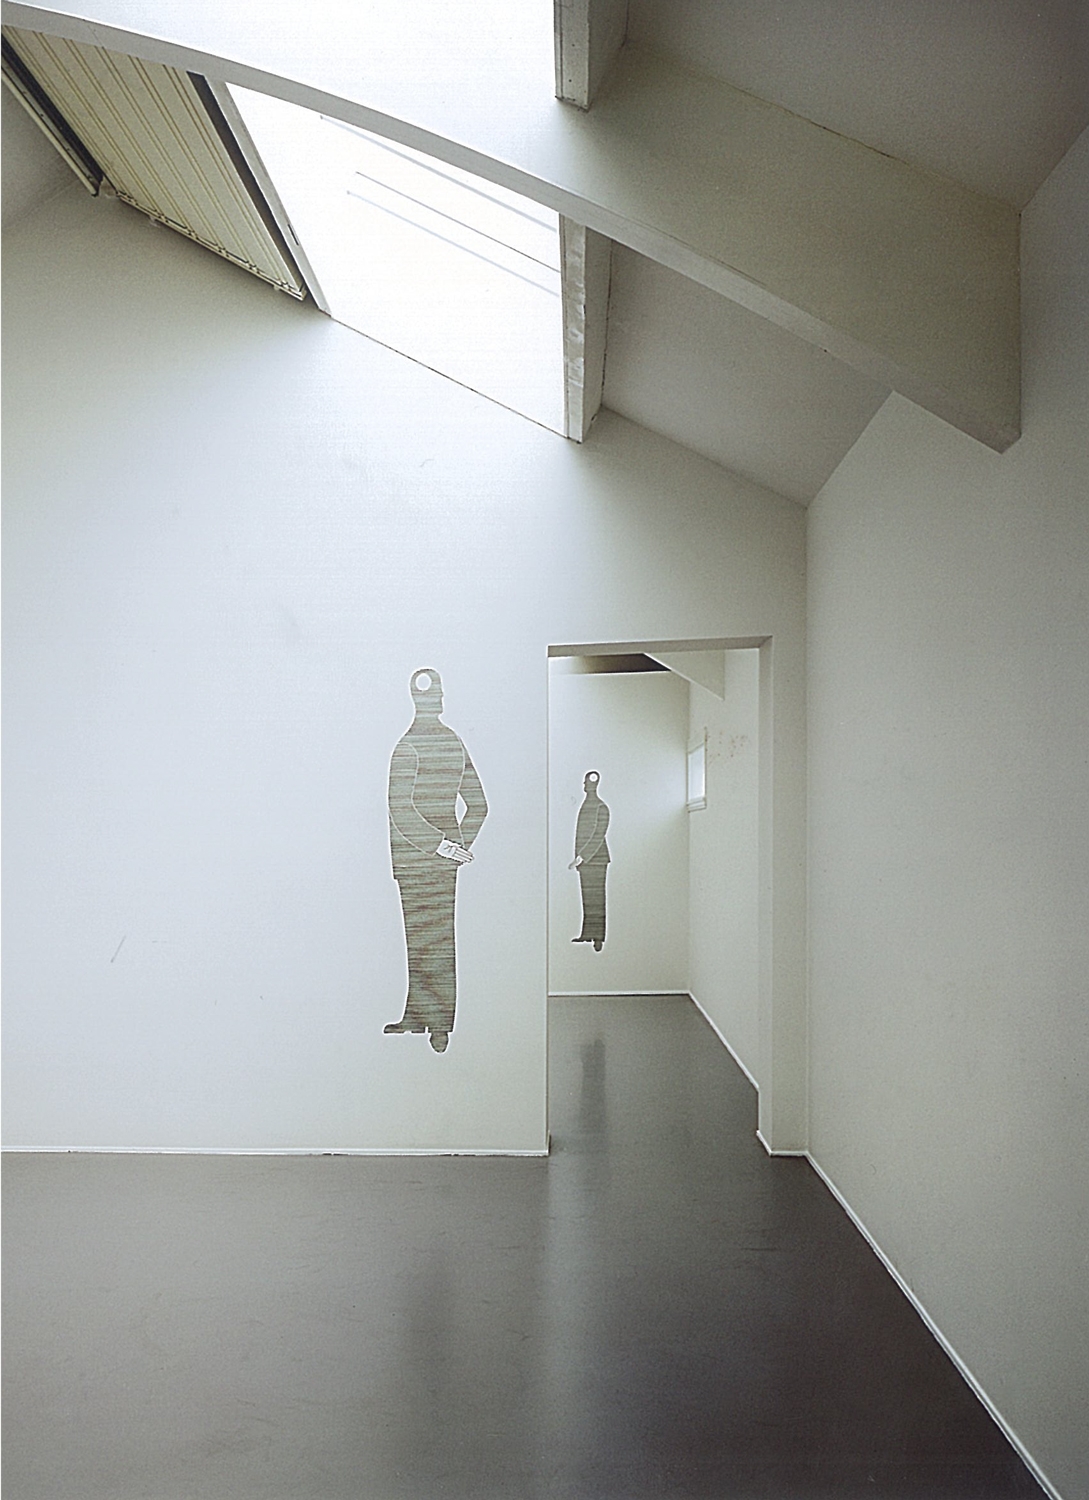 M.R. van der Graaff, 2006
Installation image | S E C | M.R. van der Graaff